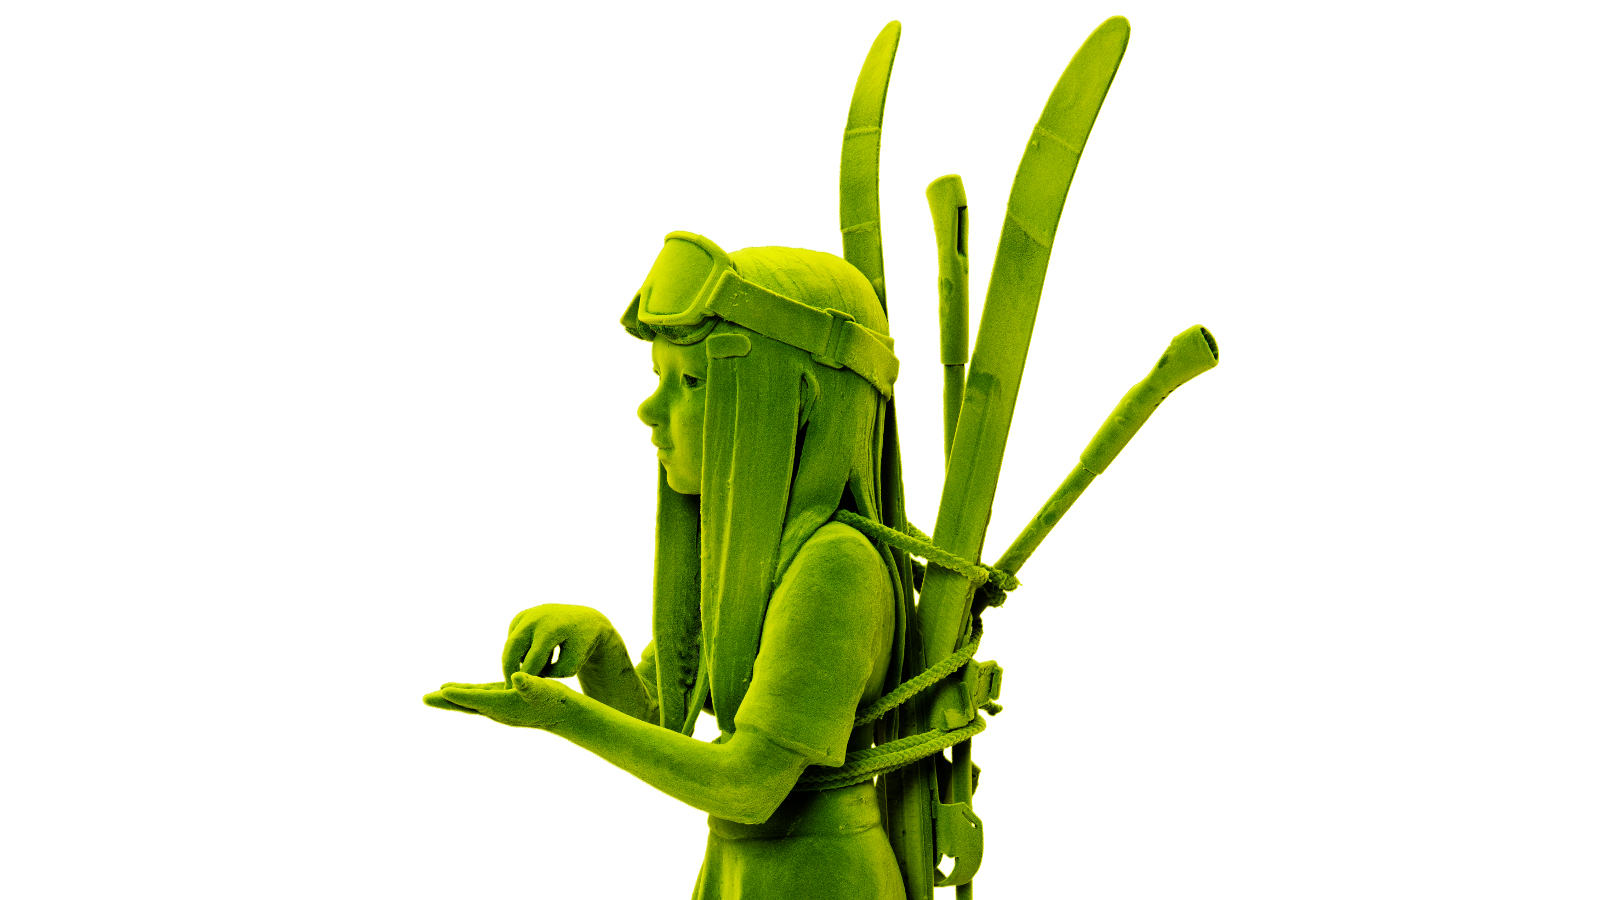 Kuvassa on sivuttain soturin näköinen vihreä soturi ja sillä on selässään reppu. Siinä tulee ylöspäin keihäitä. 